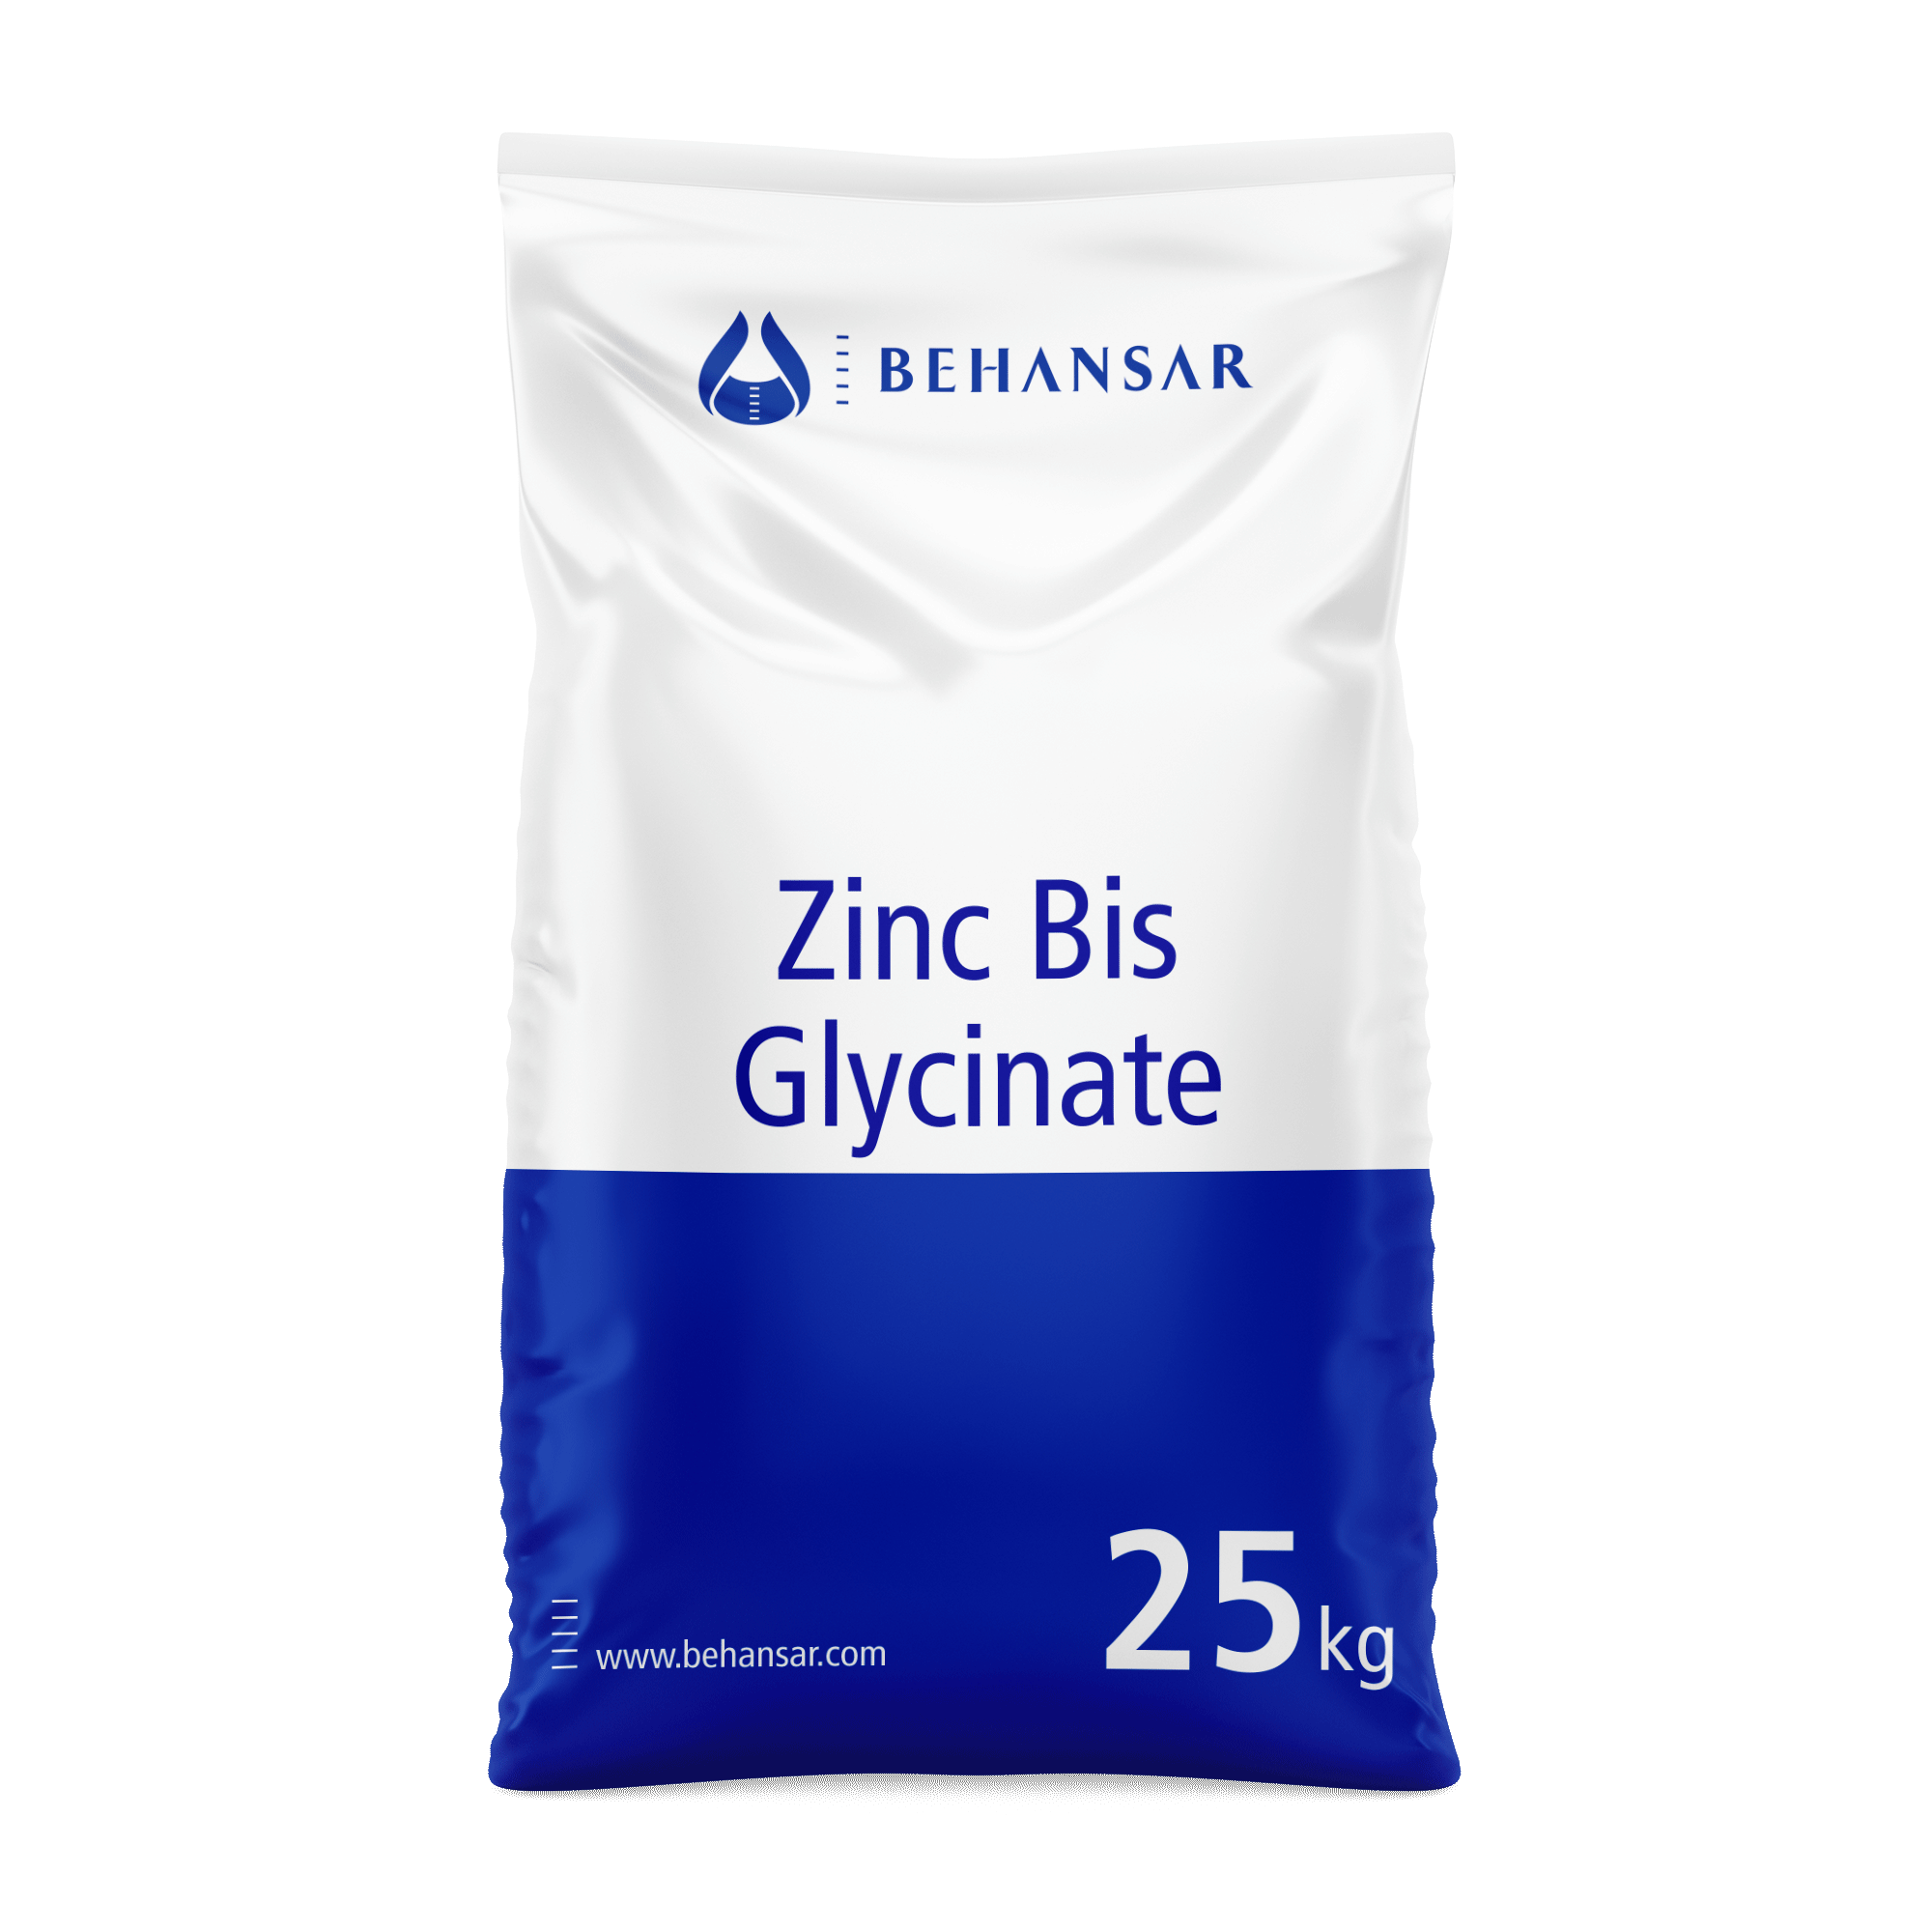 زینک بیس گلایسینات یکی از تولیدات شرکت بهانسار است